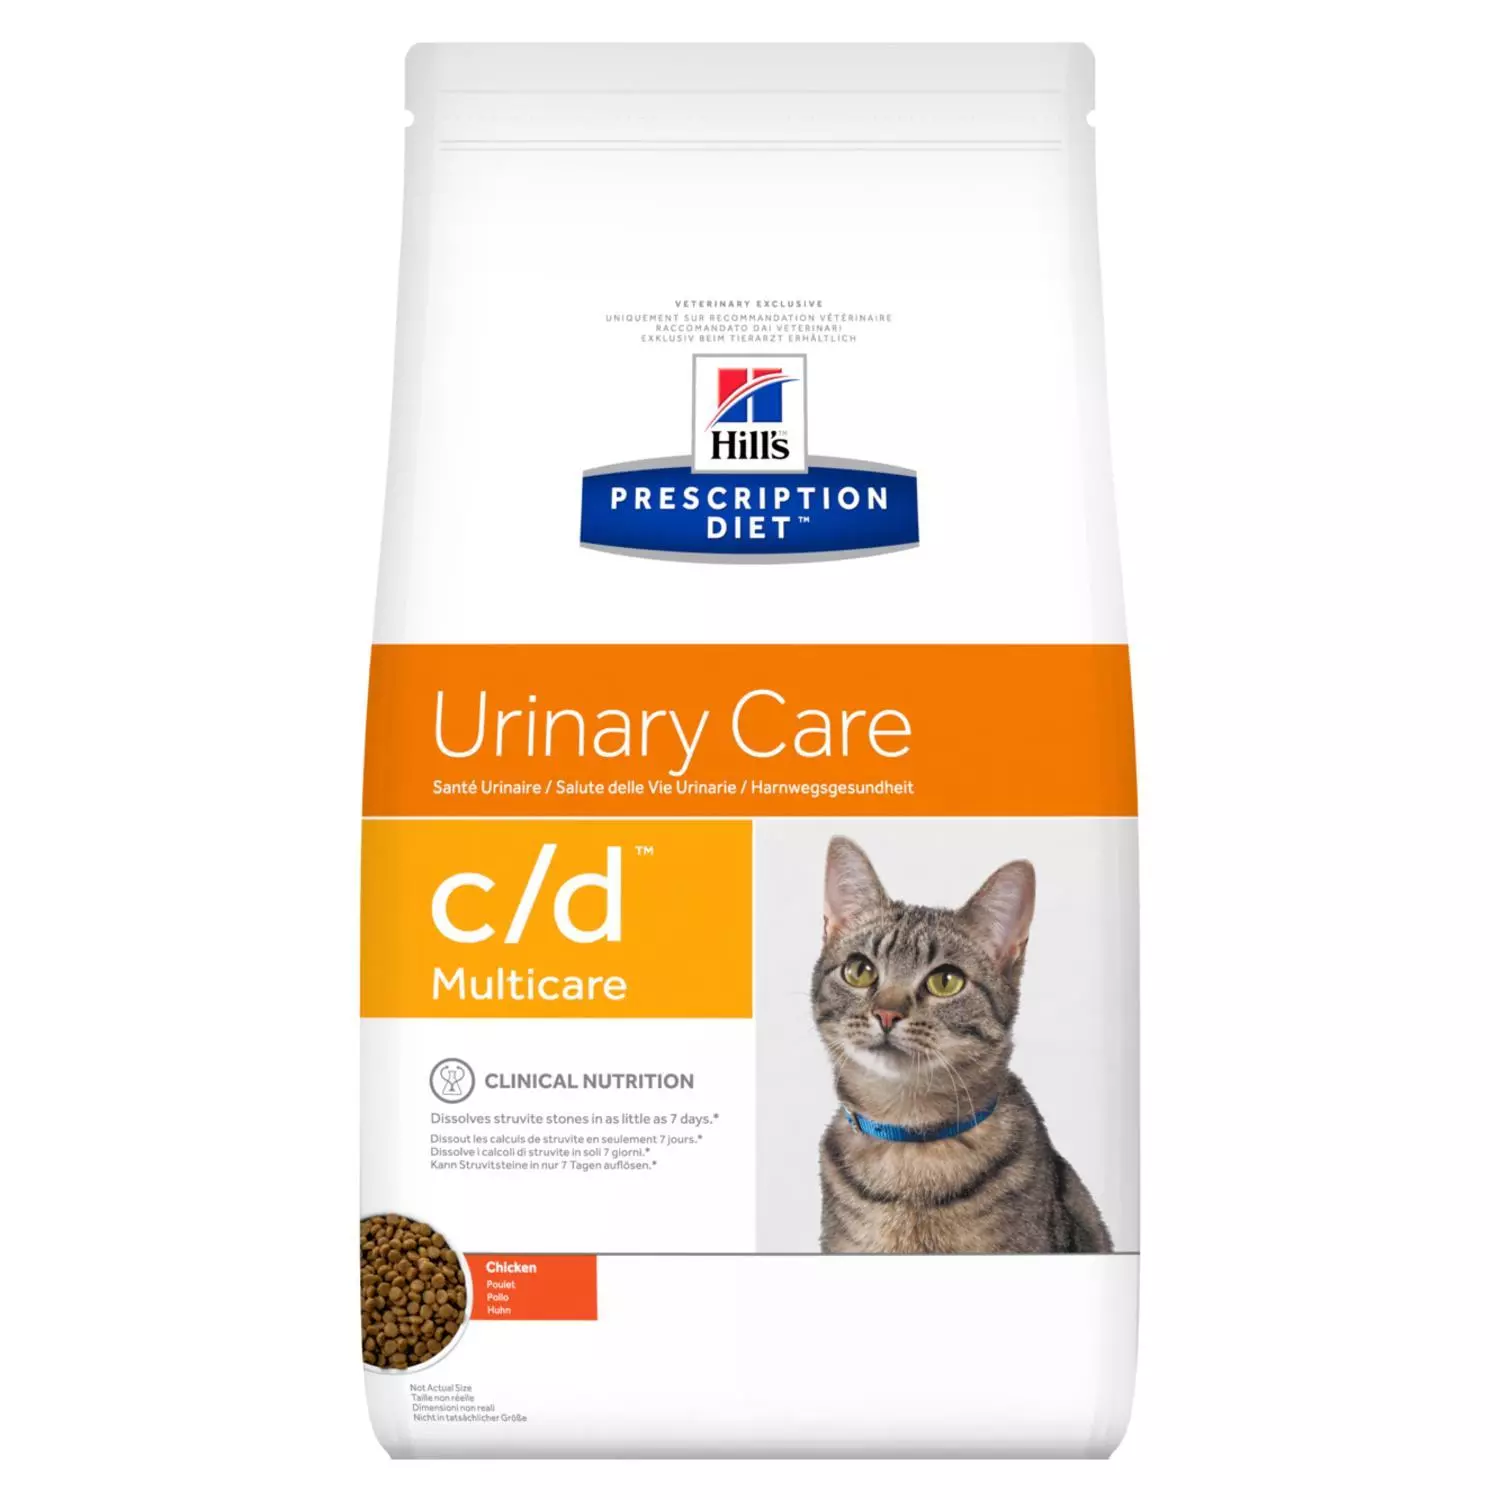 Prooi sector Zelden Hill's prescription diet feline c/d urinary care kip 10 kg Kattenvoer - Van  Noord's Dierenvoeders